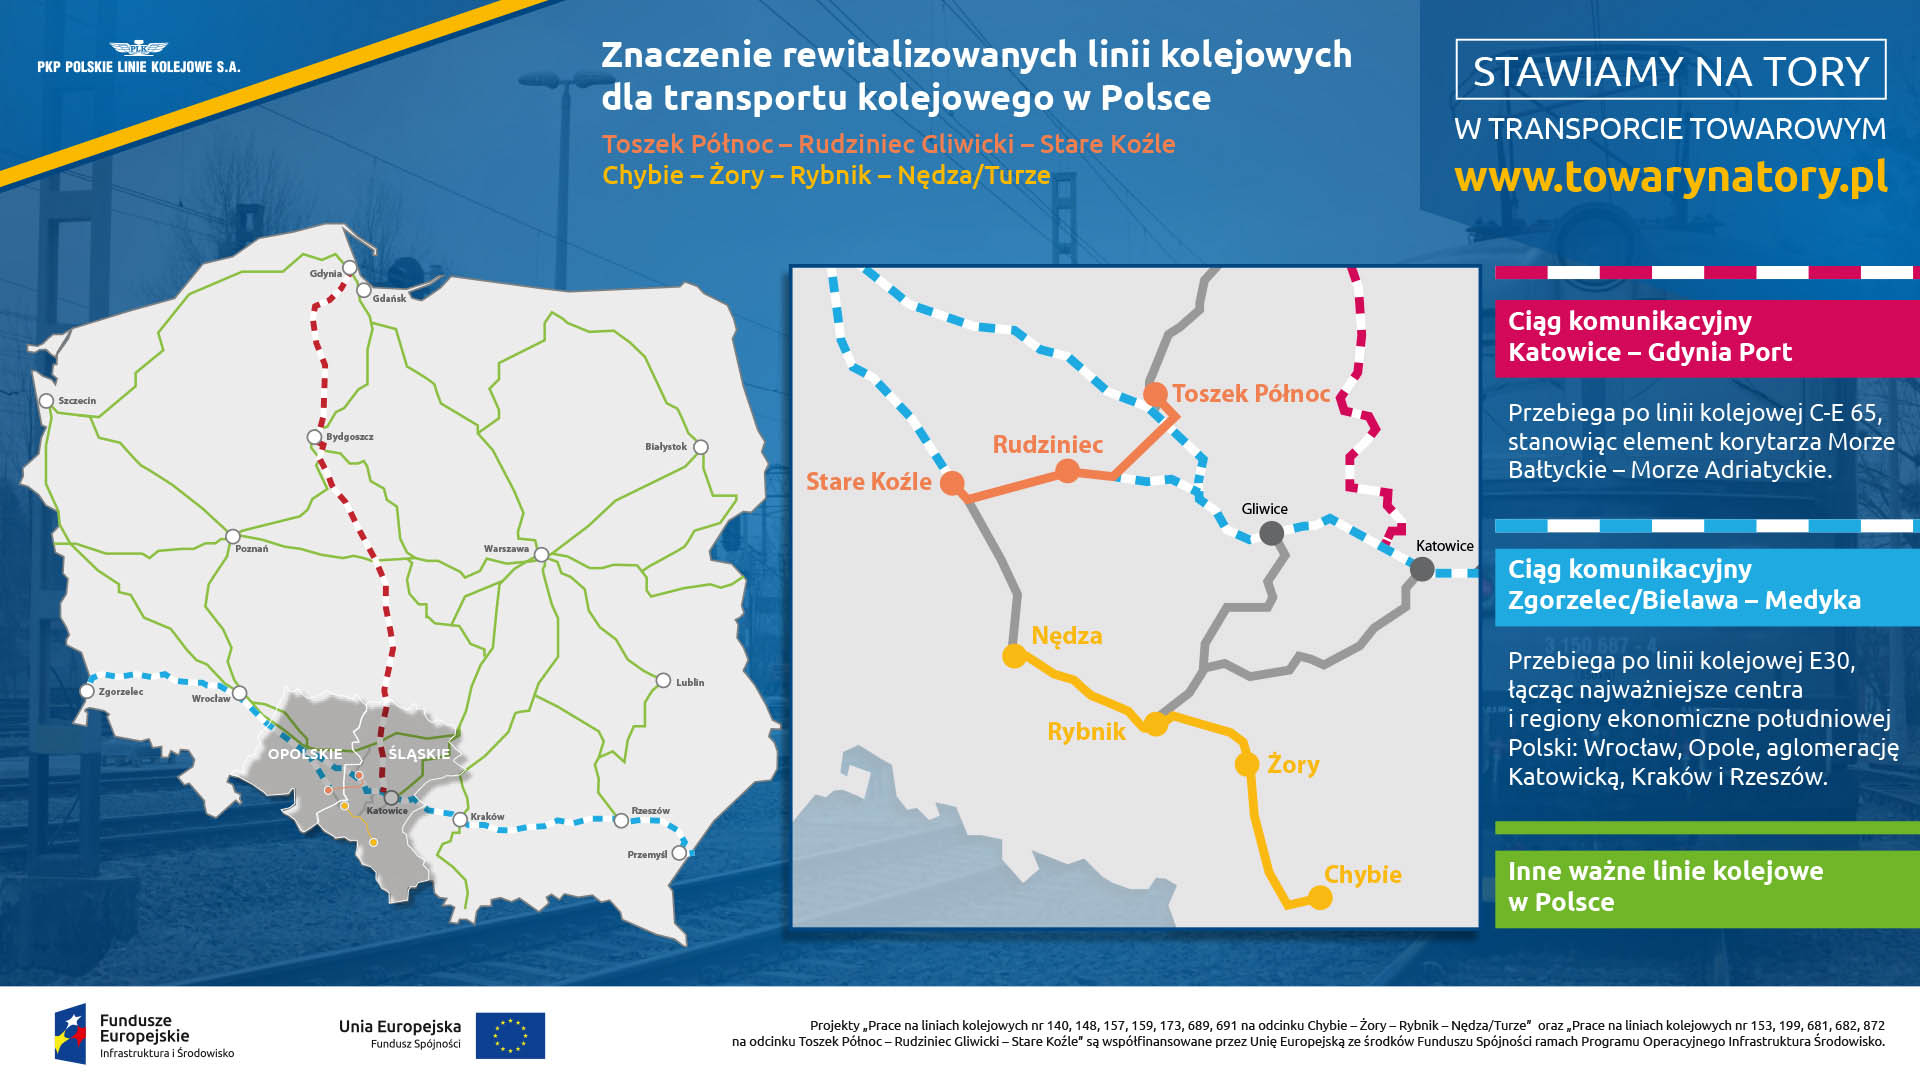 Infografika mówi o znaczeniu rewitalizowanych linii kolejowych dla transportu kolejowego towarów w Polsce. Pokazuje bliskość z dwoma ważnymi ciągami komunikacyjnymi: Katowice - Gdynia Port i Zgorzelec Bielawa - Medyka.